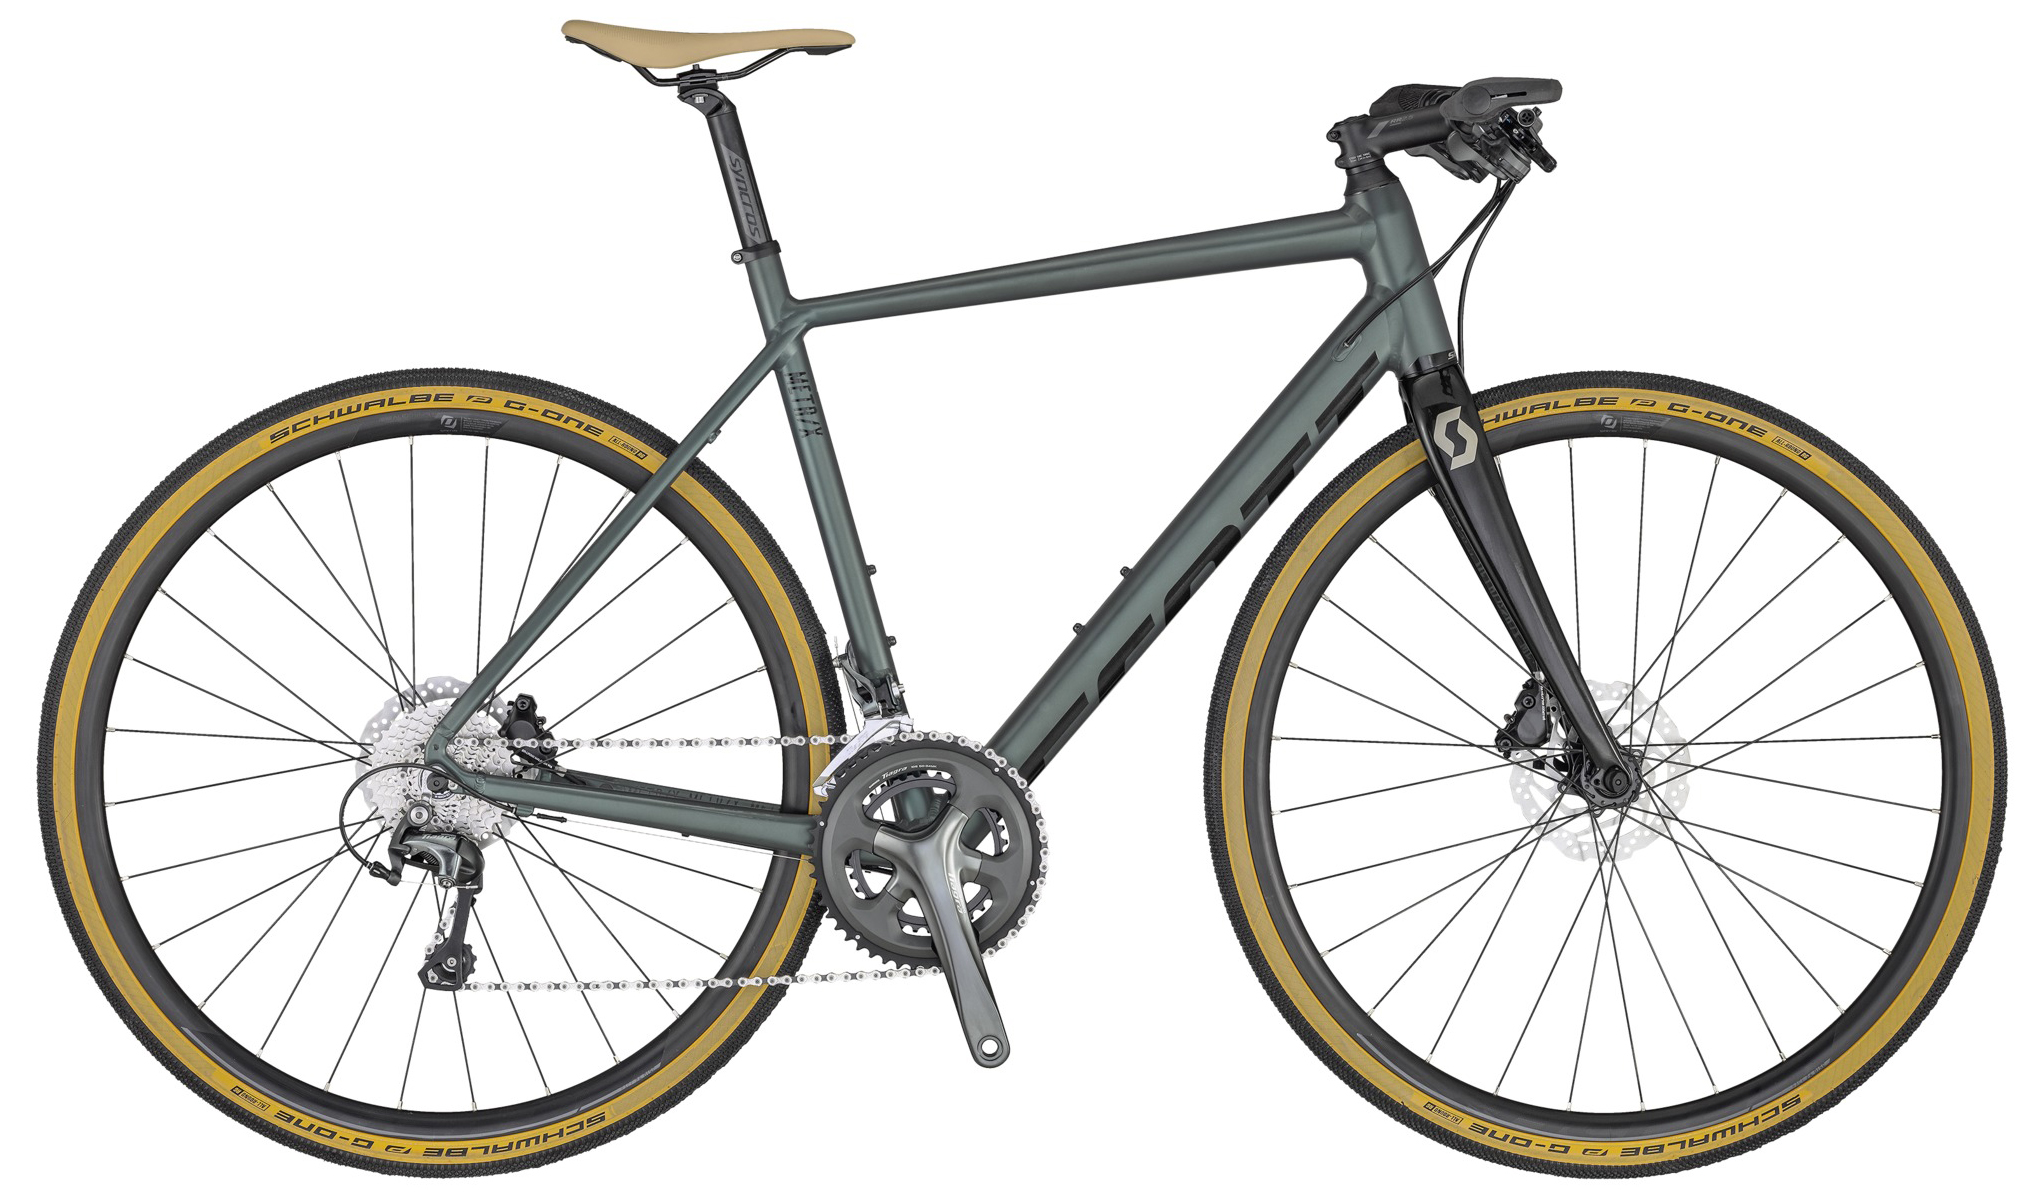  Отзывы о Городском велосипеде Scott Metrix 20 2020